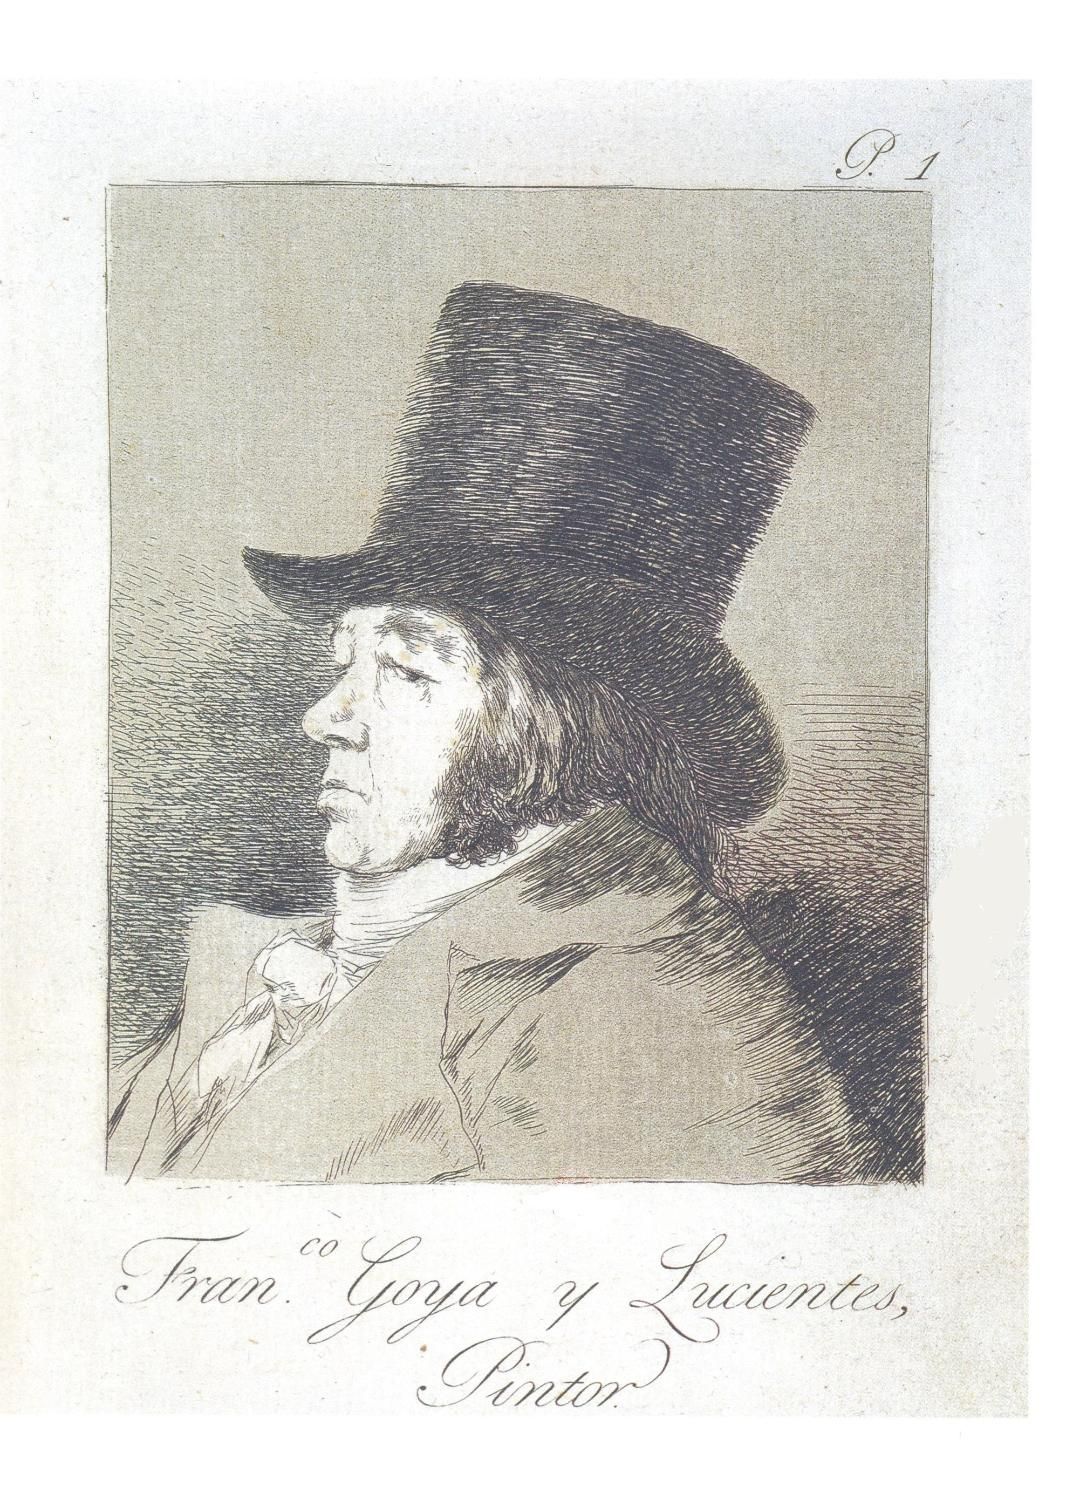 Francisco GOYA Francisco Goya y Lucientes

 Autoritratto, 1799

 

 Incisione or&hellip;